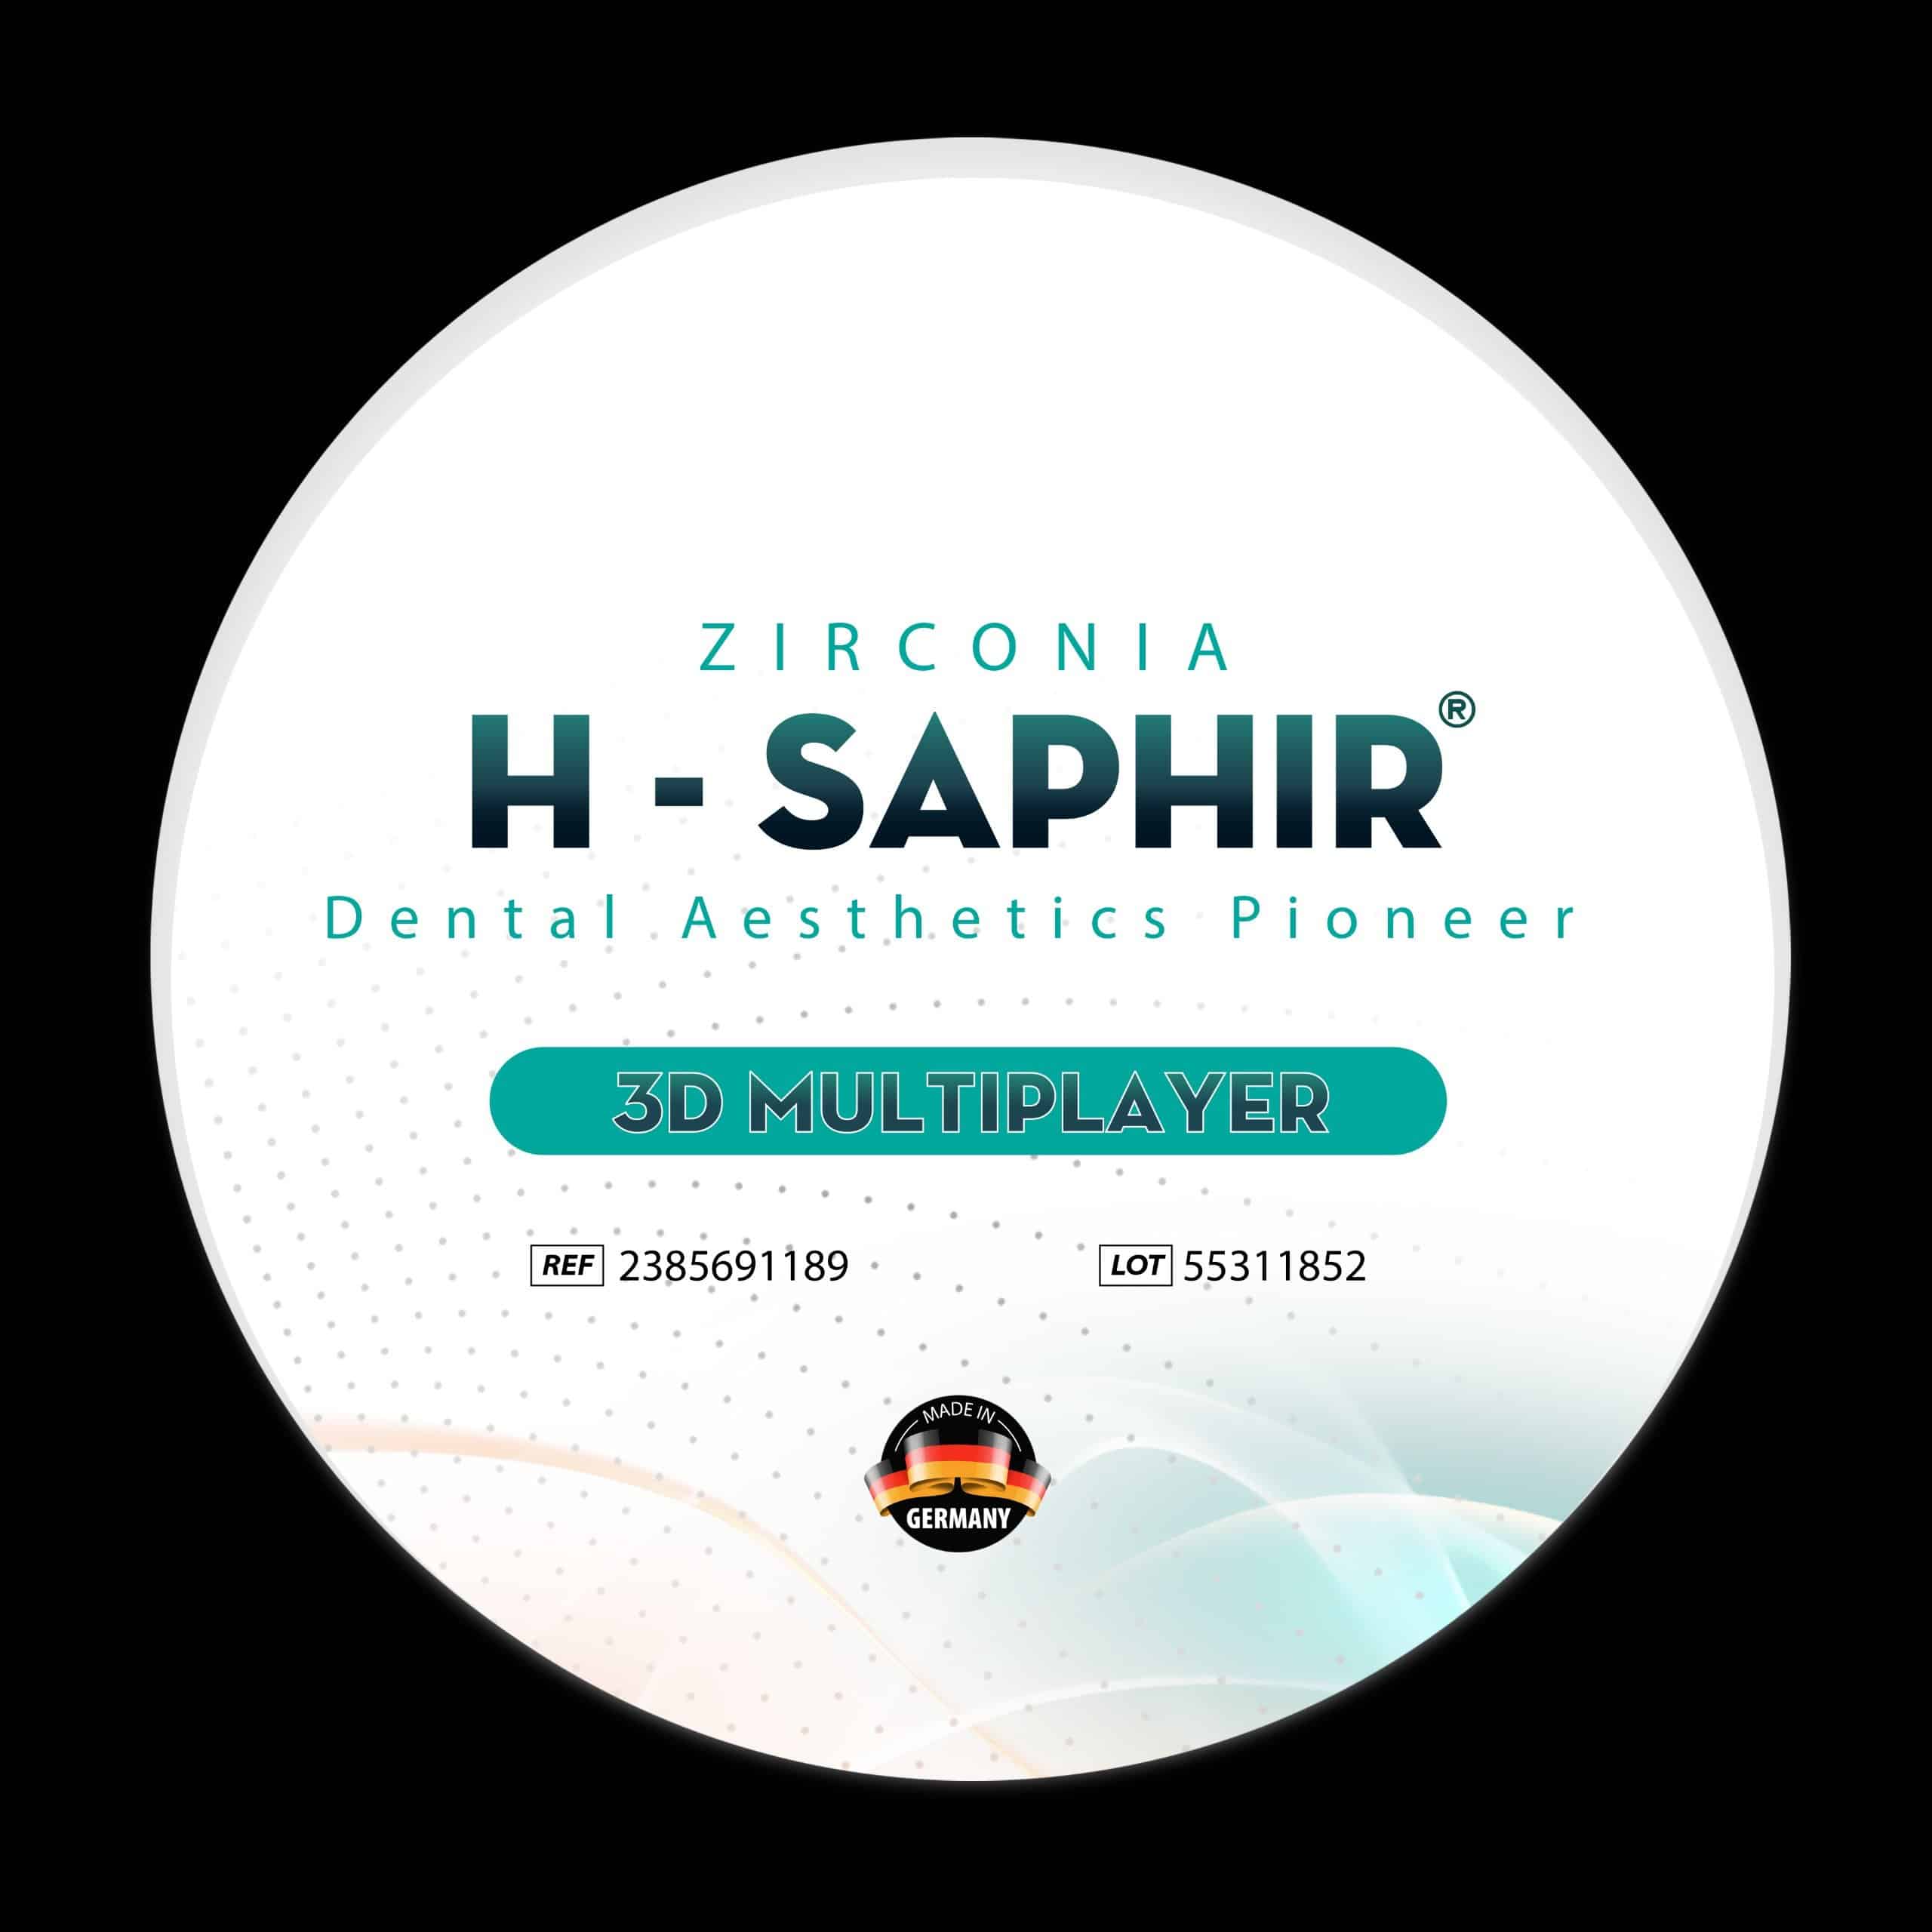 Răng sứ toàn sứ H-Saphir